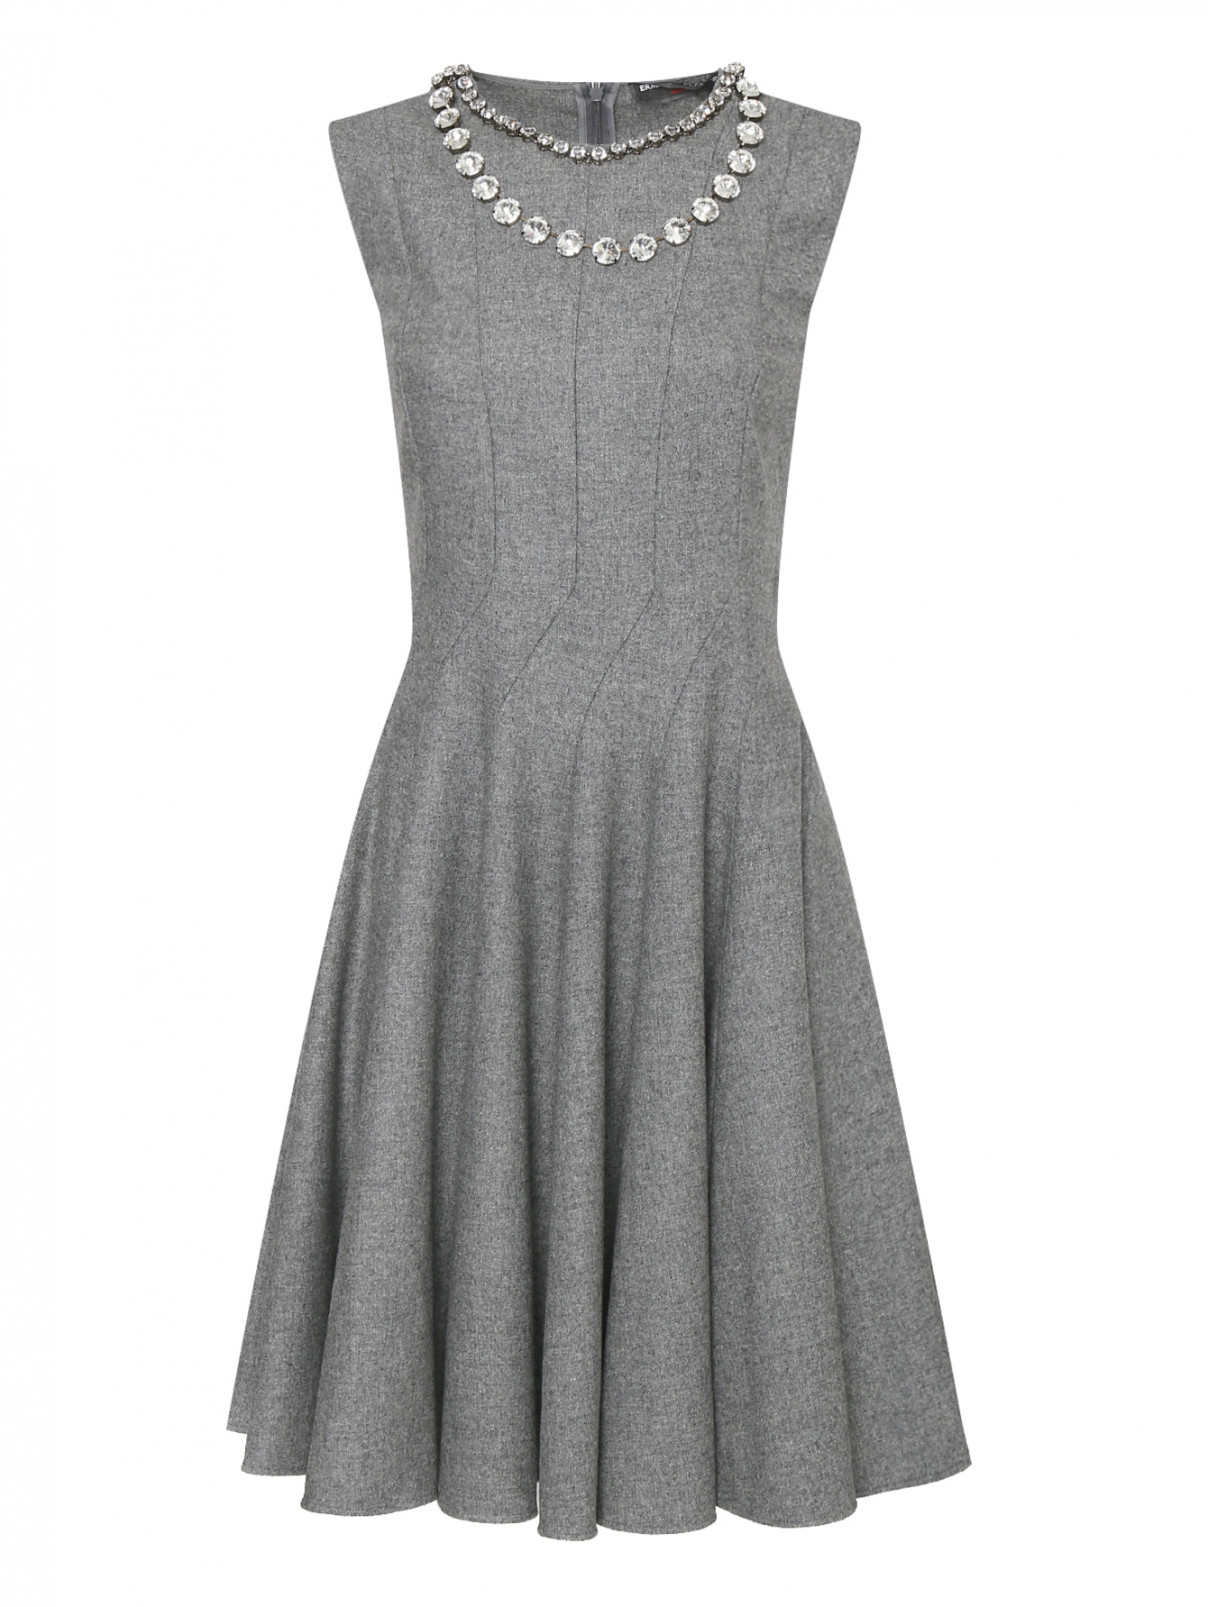 Шерстяное платье с аппликациями из камней  на воротнике Ermanno Scervino  –  Общий вид  – Цвет:  Серый